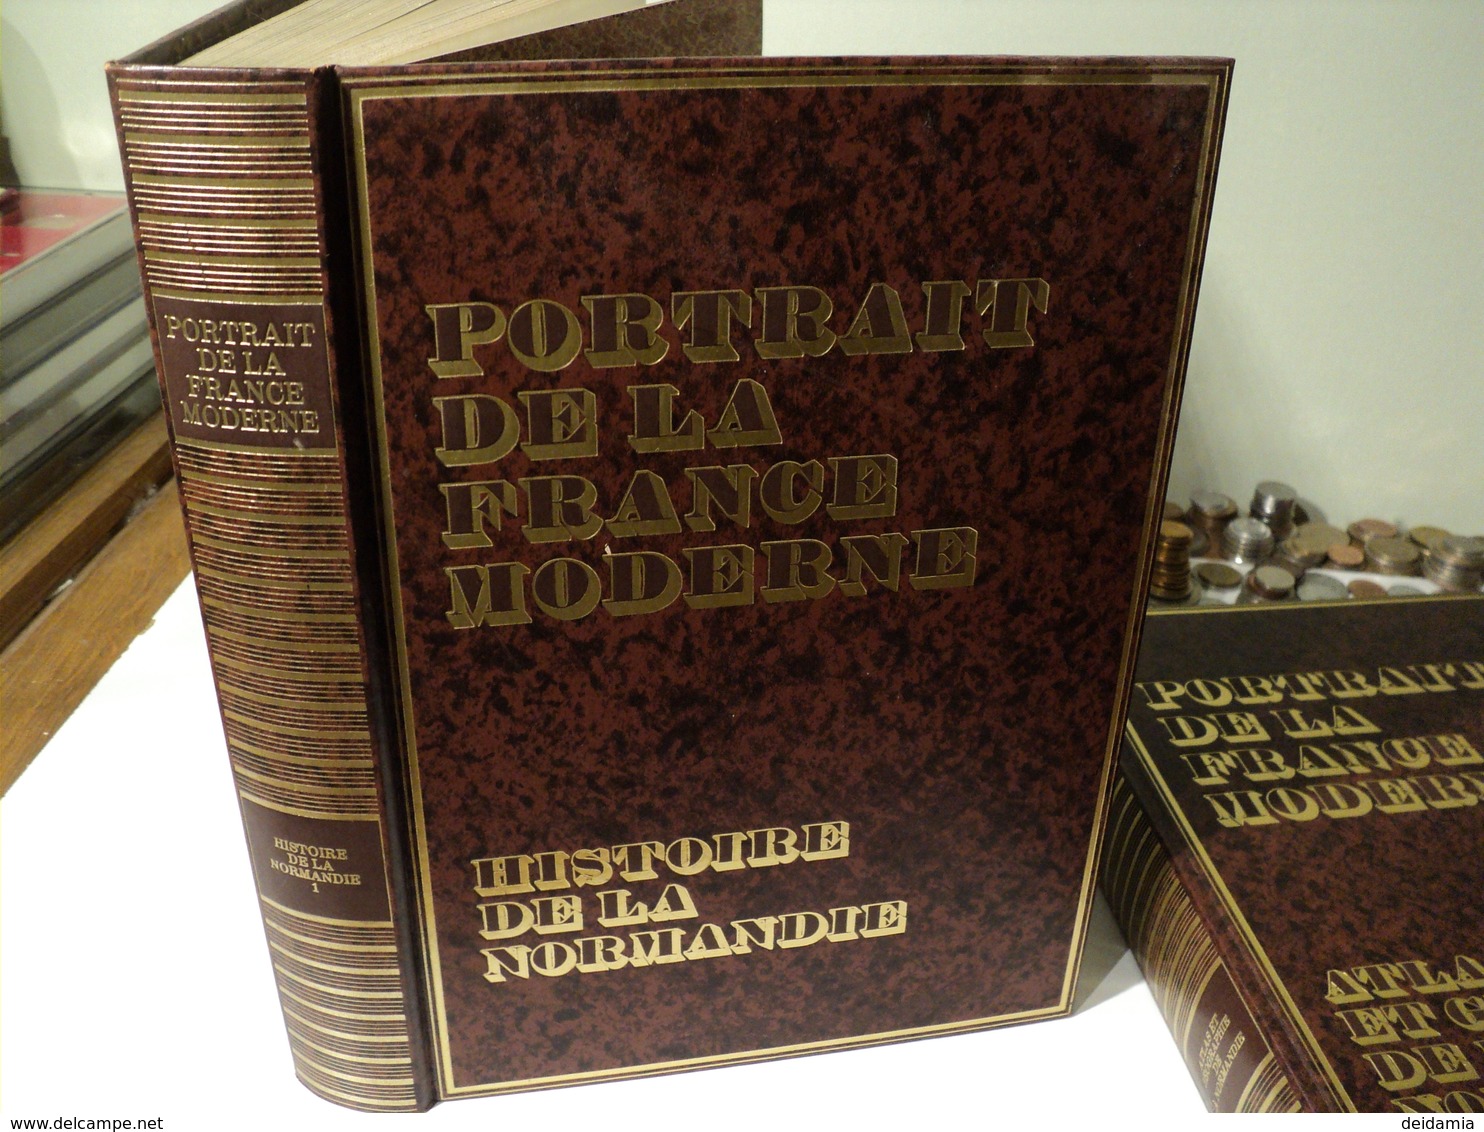 HISTOIRE DE LA NORMANDIE TOME 1. COLLECTION PORTRAIT DE LA FRANCE MODERNE. 1977 EDITIONS FAMOT. PAR JEAN DASTUGUE ANCIE - Normandie